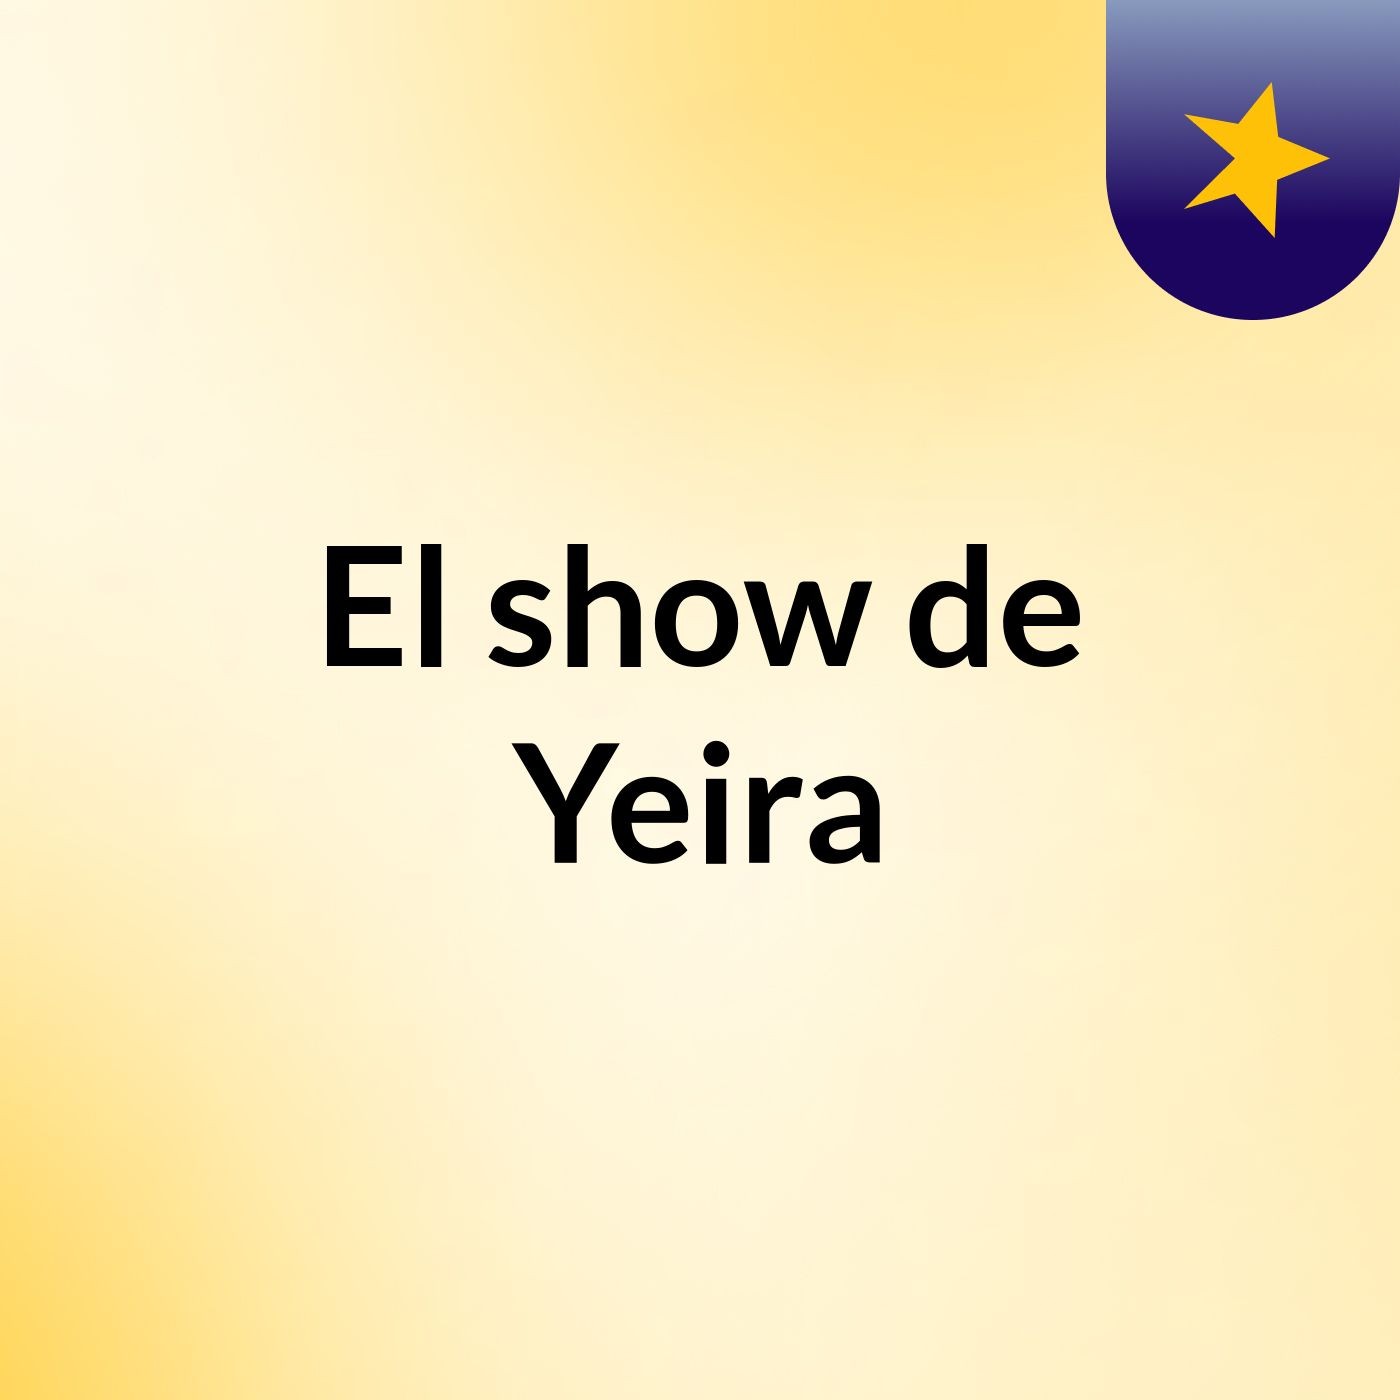 El show de Yeira